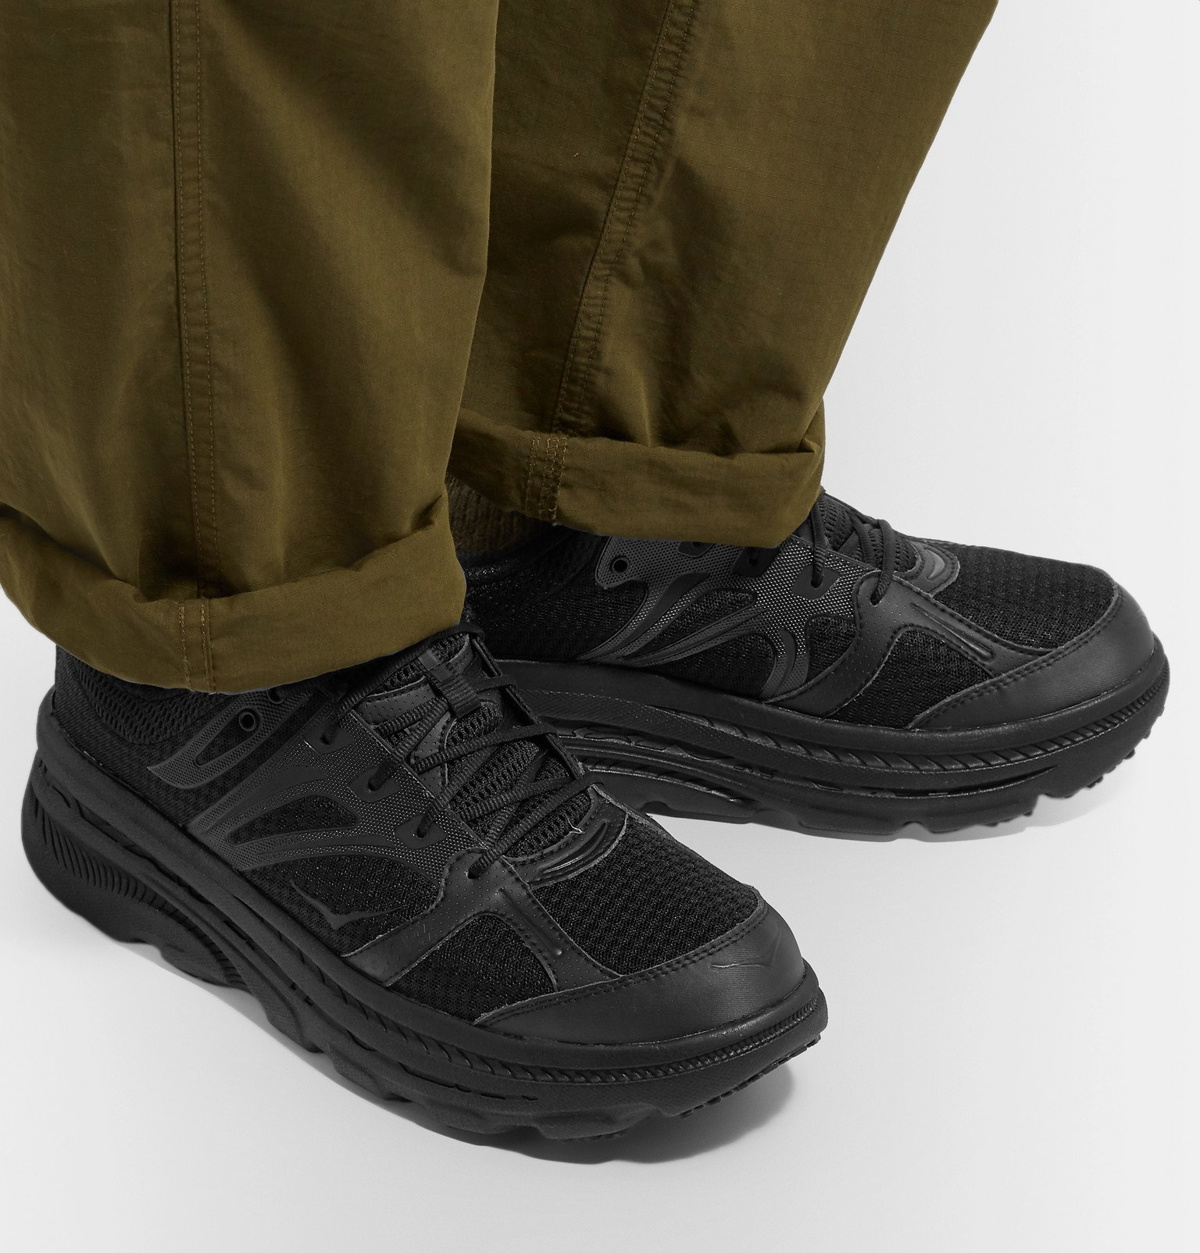 Hoka One One - Engineered Garments Bondi B Rubber-Trimmed Mesh Sneakers -  Black Hoka One One